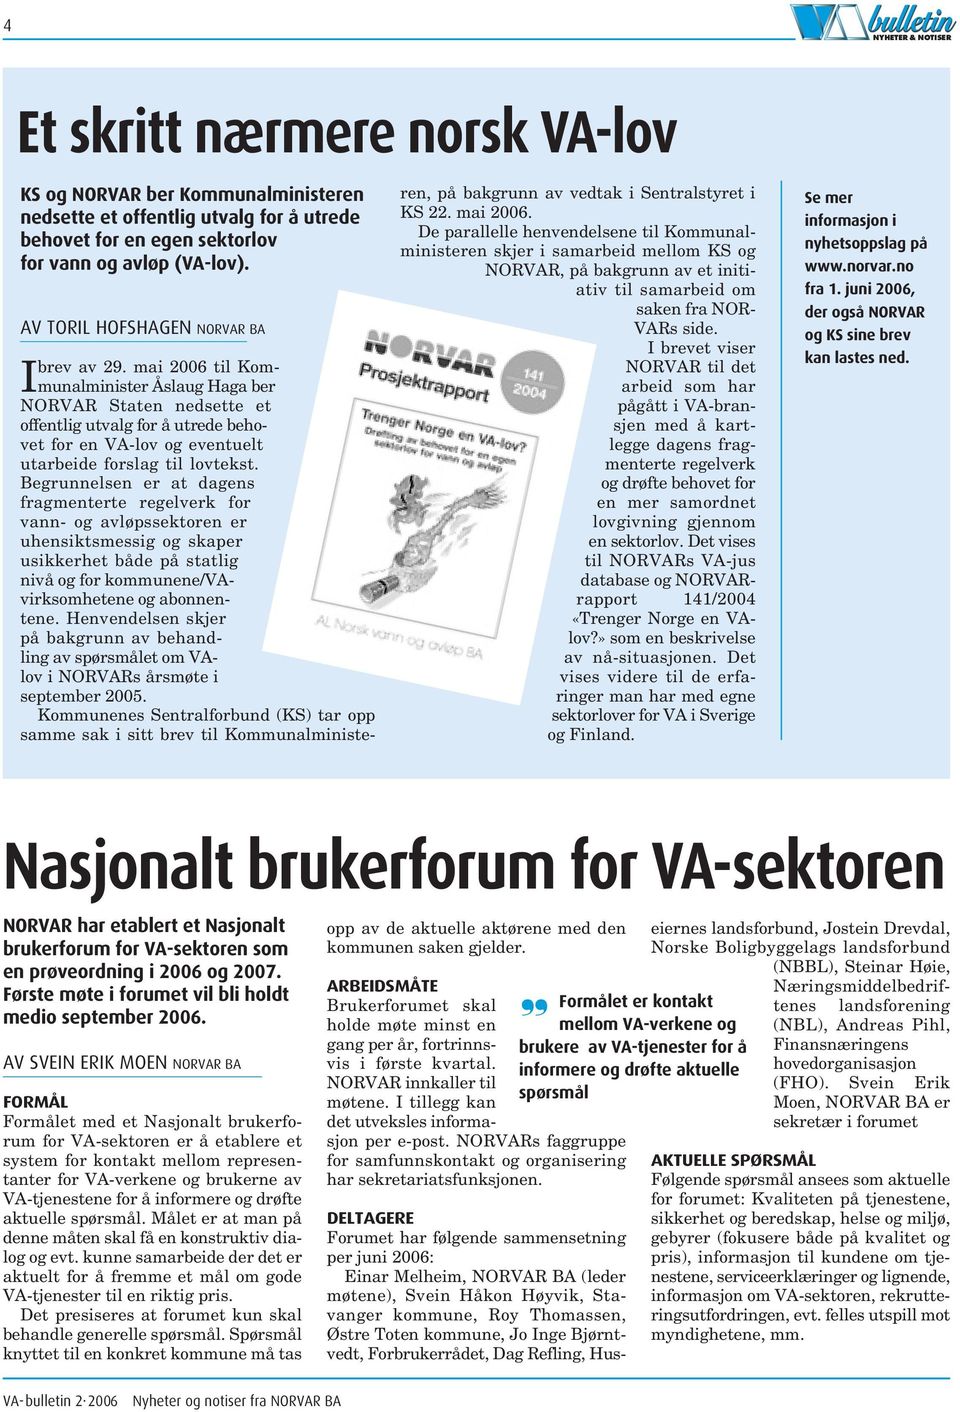 mai 2006 til Kommunalminister Åslaug Haga ber NORVAR Staten nedsette et offentlig utvalg for å utrede behovet for en VA-lov og eventuelt utarbeide forslag til lovtekst.